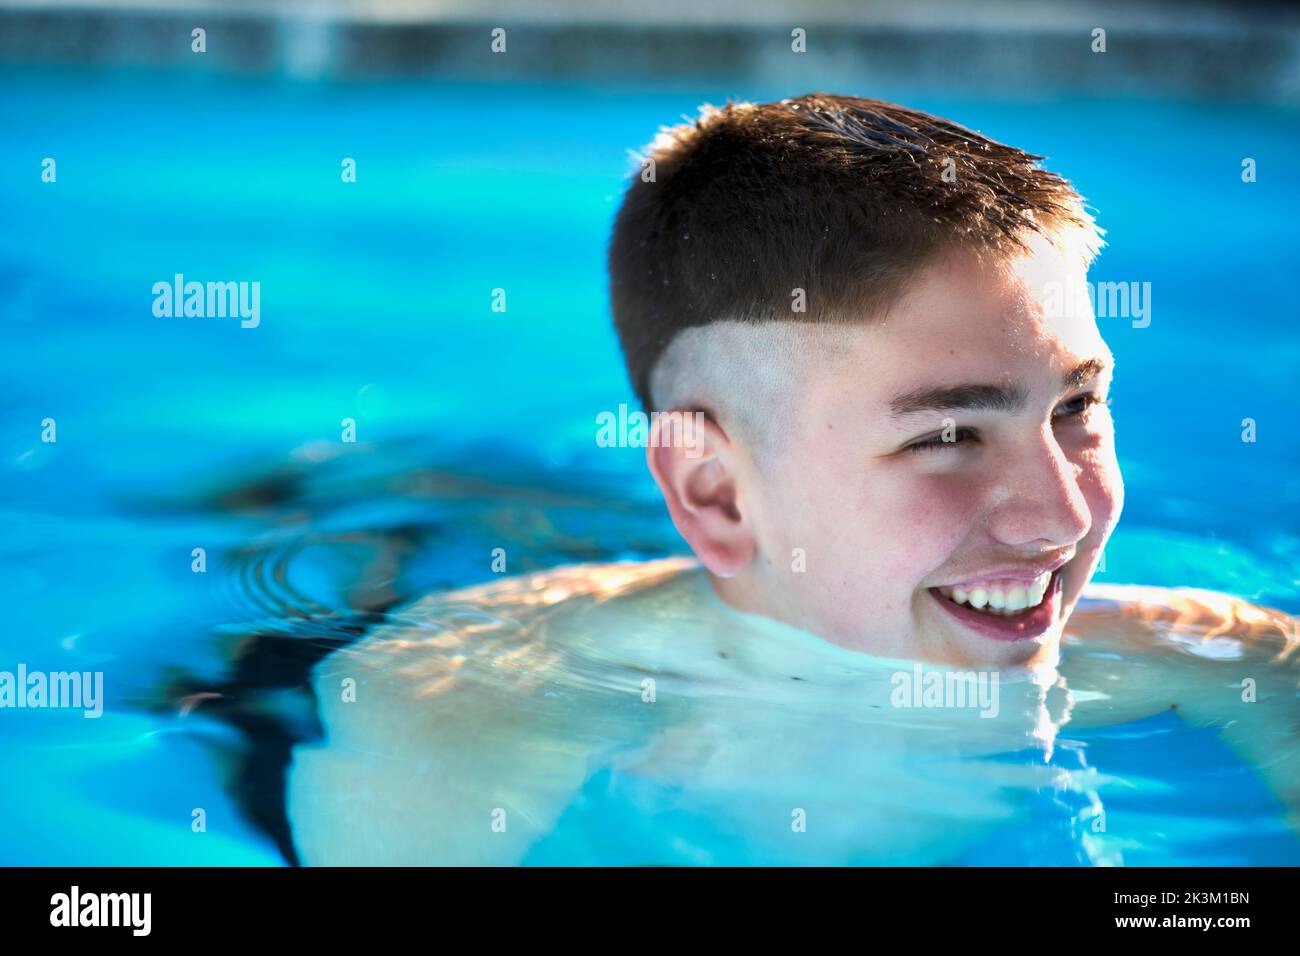 Porträt eines jungen kaukasischen Jungen in einem Schwimmbad, bis zu seinem Mund in Wasser getaucht. Lifestyle-Konzept. Stockfoto